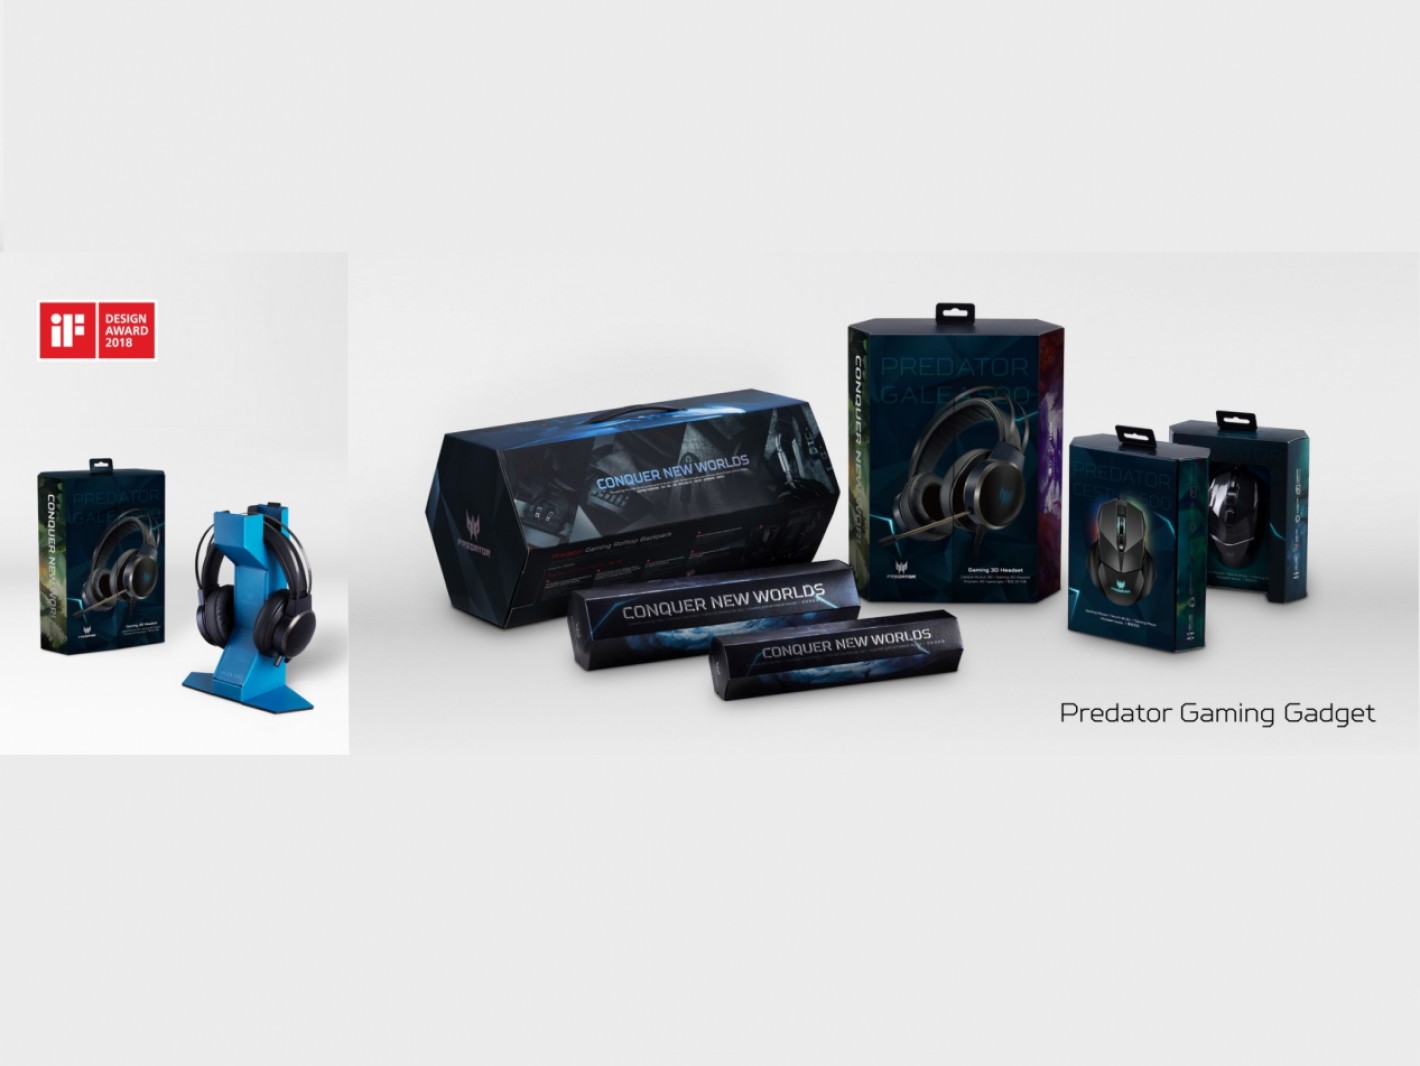 Acer iF Design Award 2018 - Predator Gaming Gadget Packaging